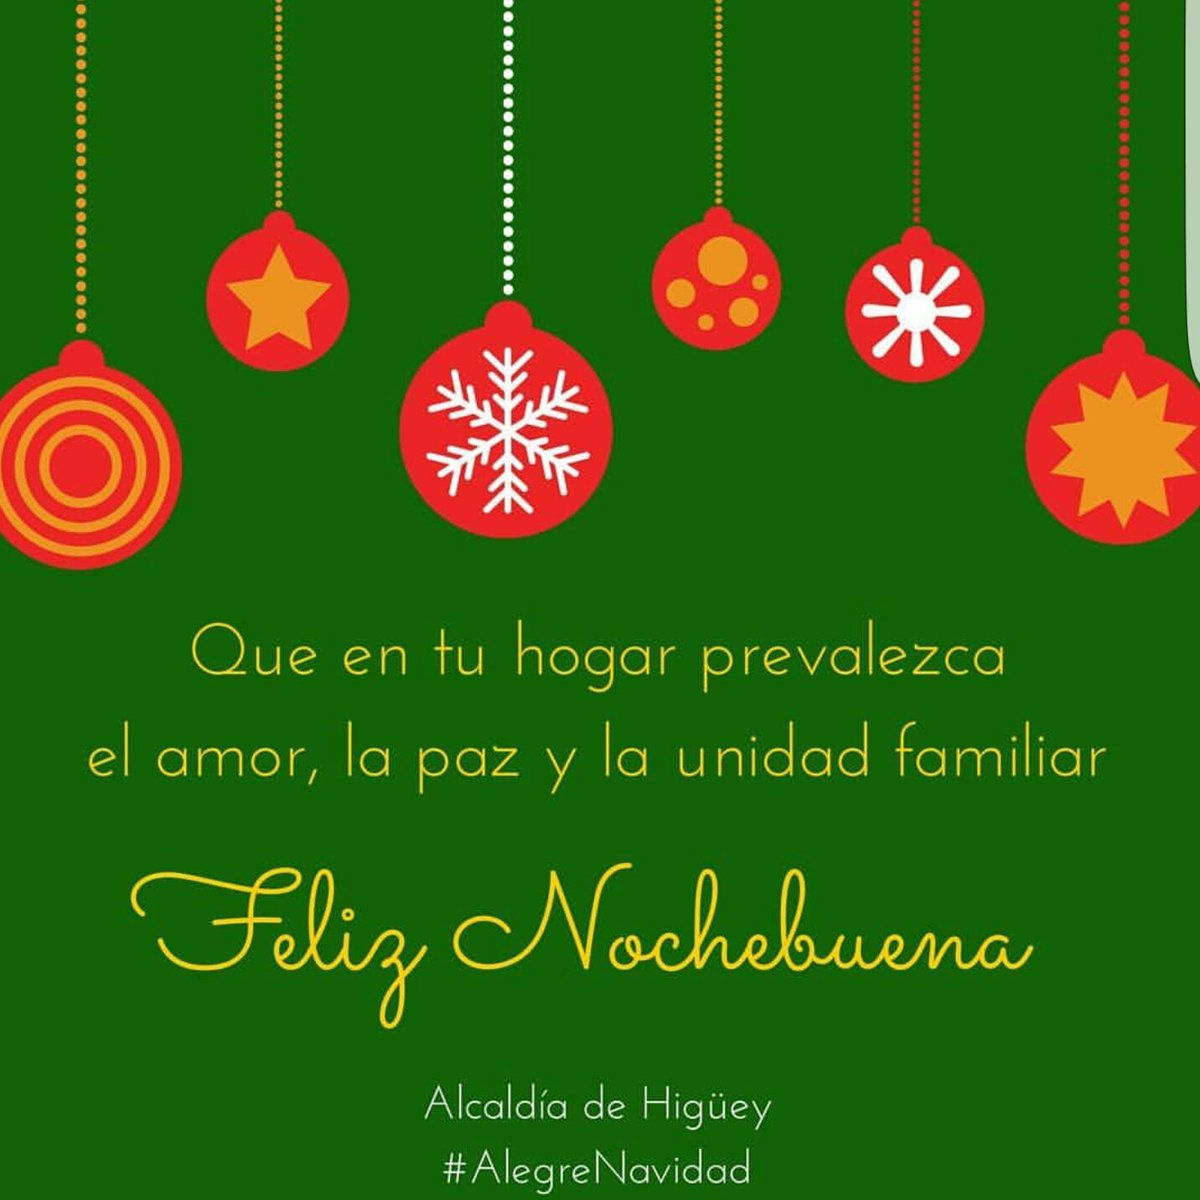 Feliz Nochebuena !!! #alcaldiadehiguey #alegrenavidad